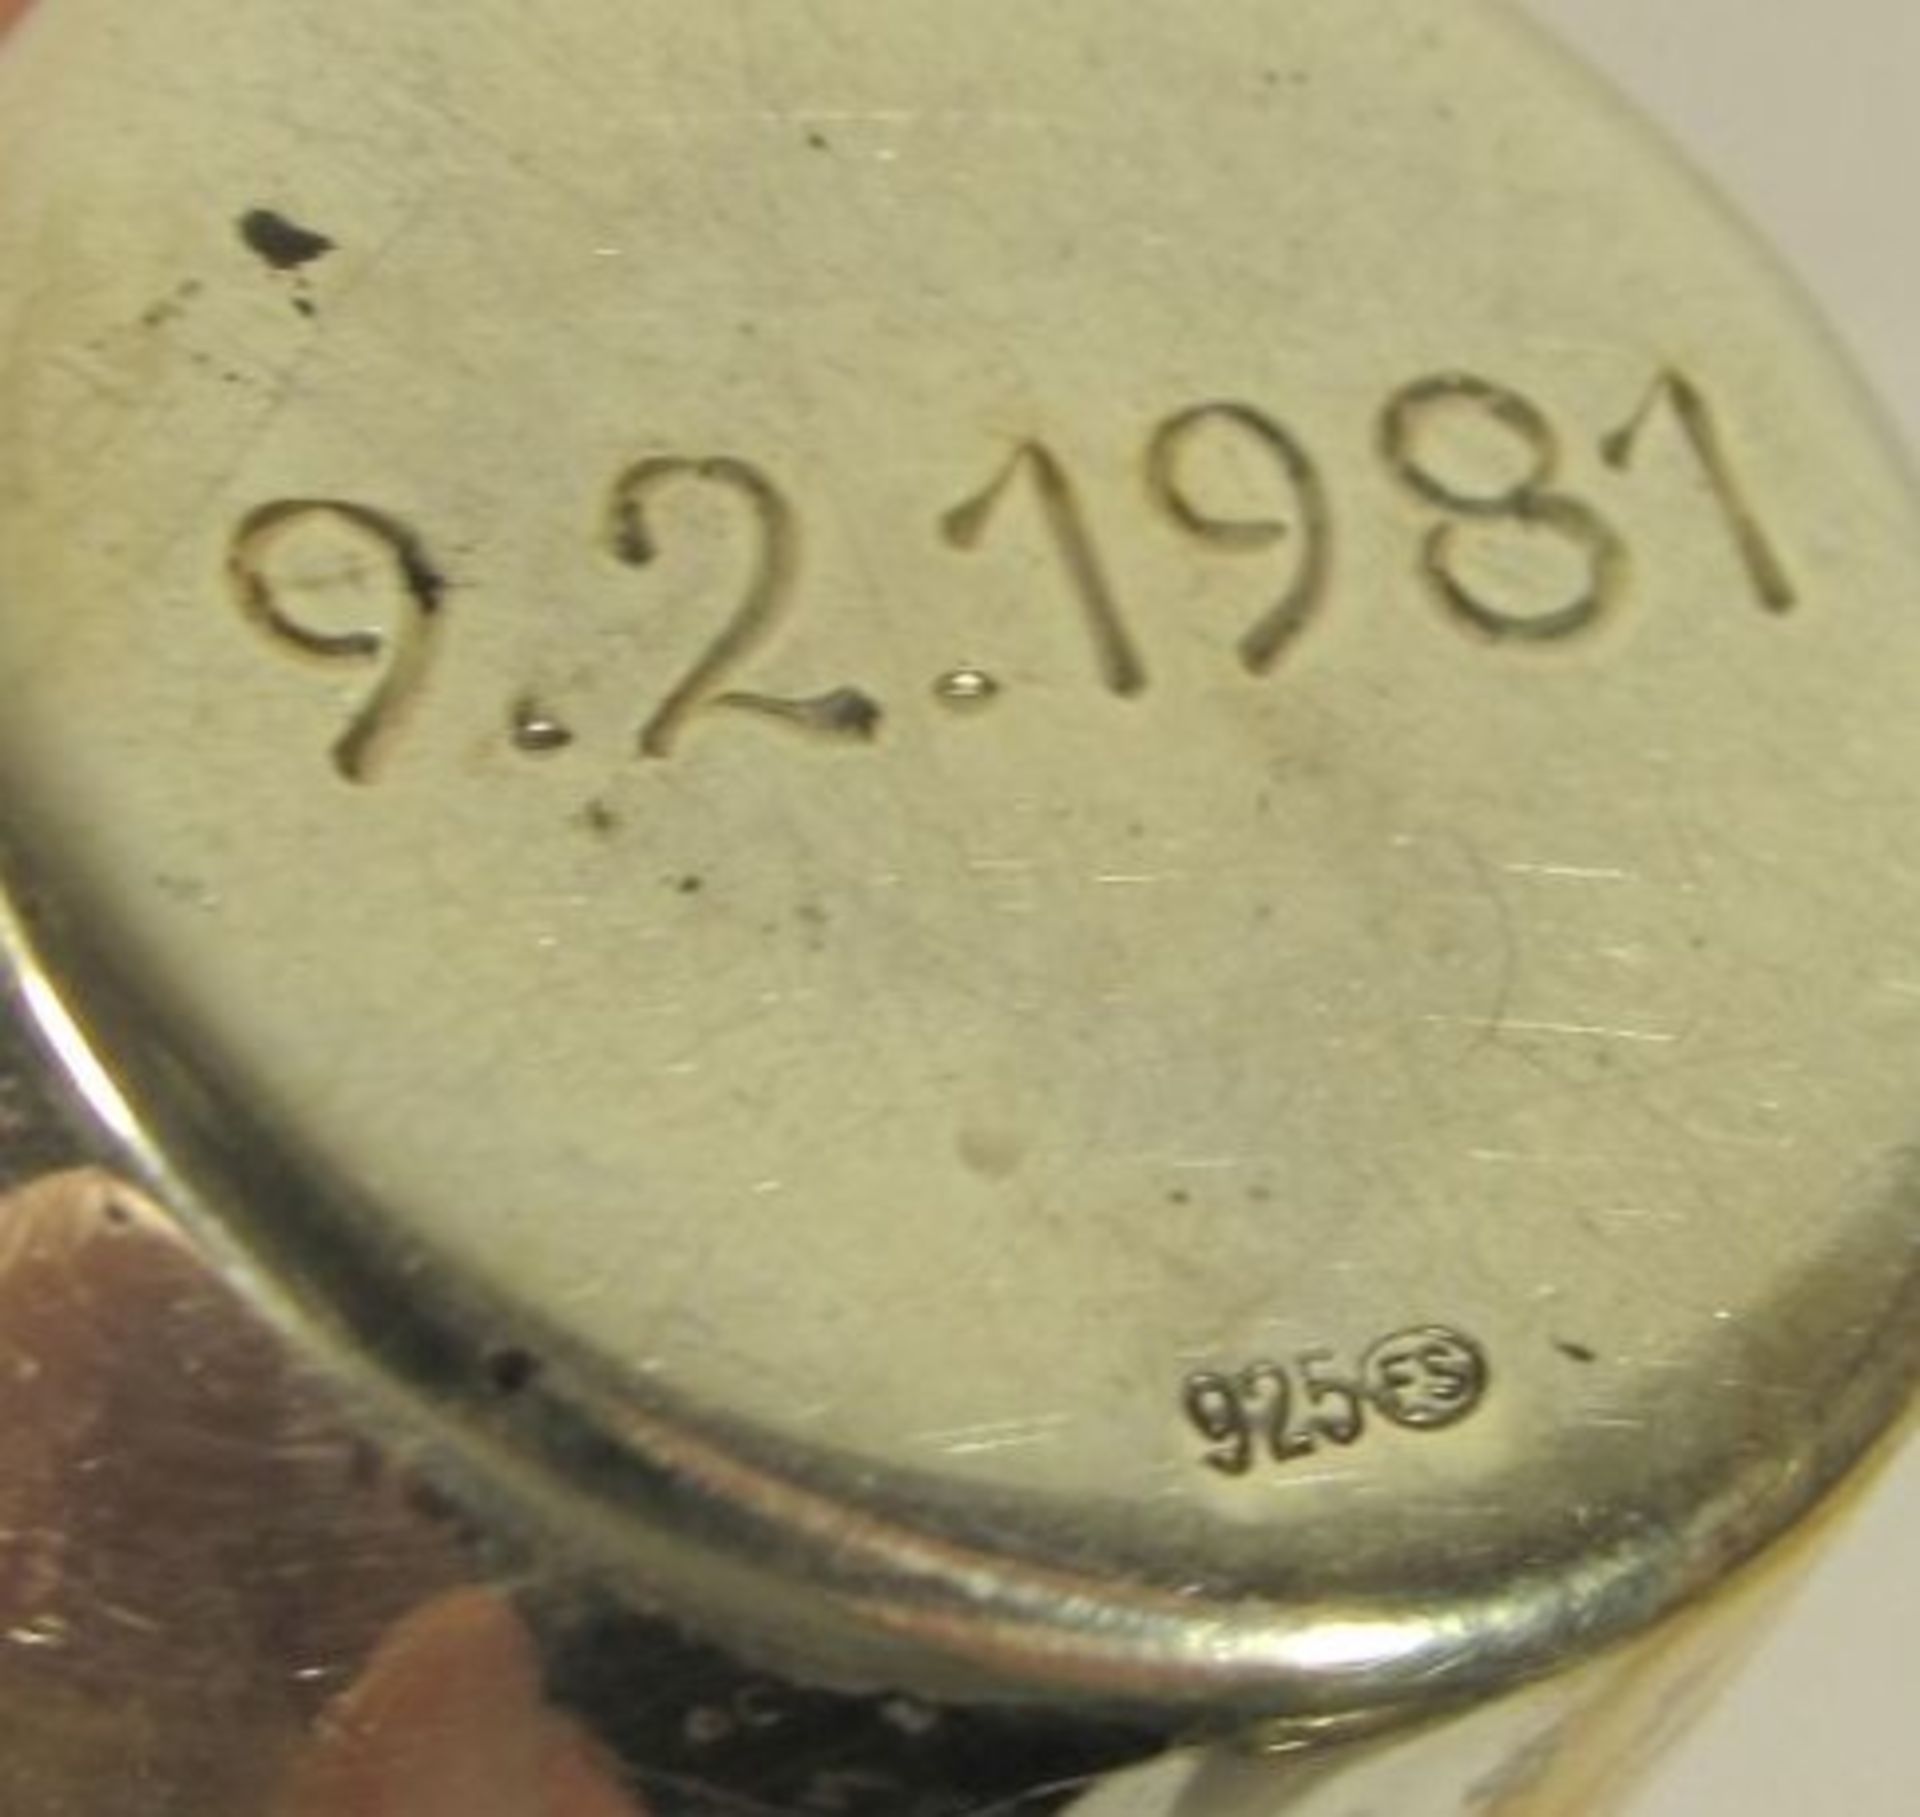 kl. Becher, 925er Silber, graviert u. datiert 1981, 21,4g, H-4,5cm . - Bild 2 aus 2